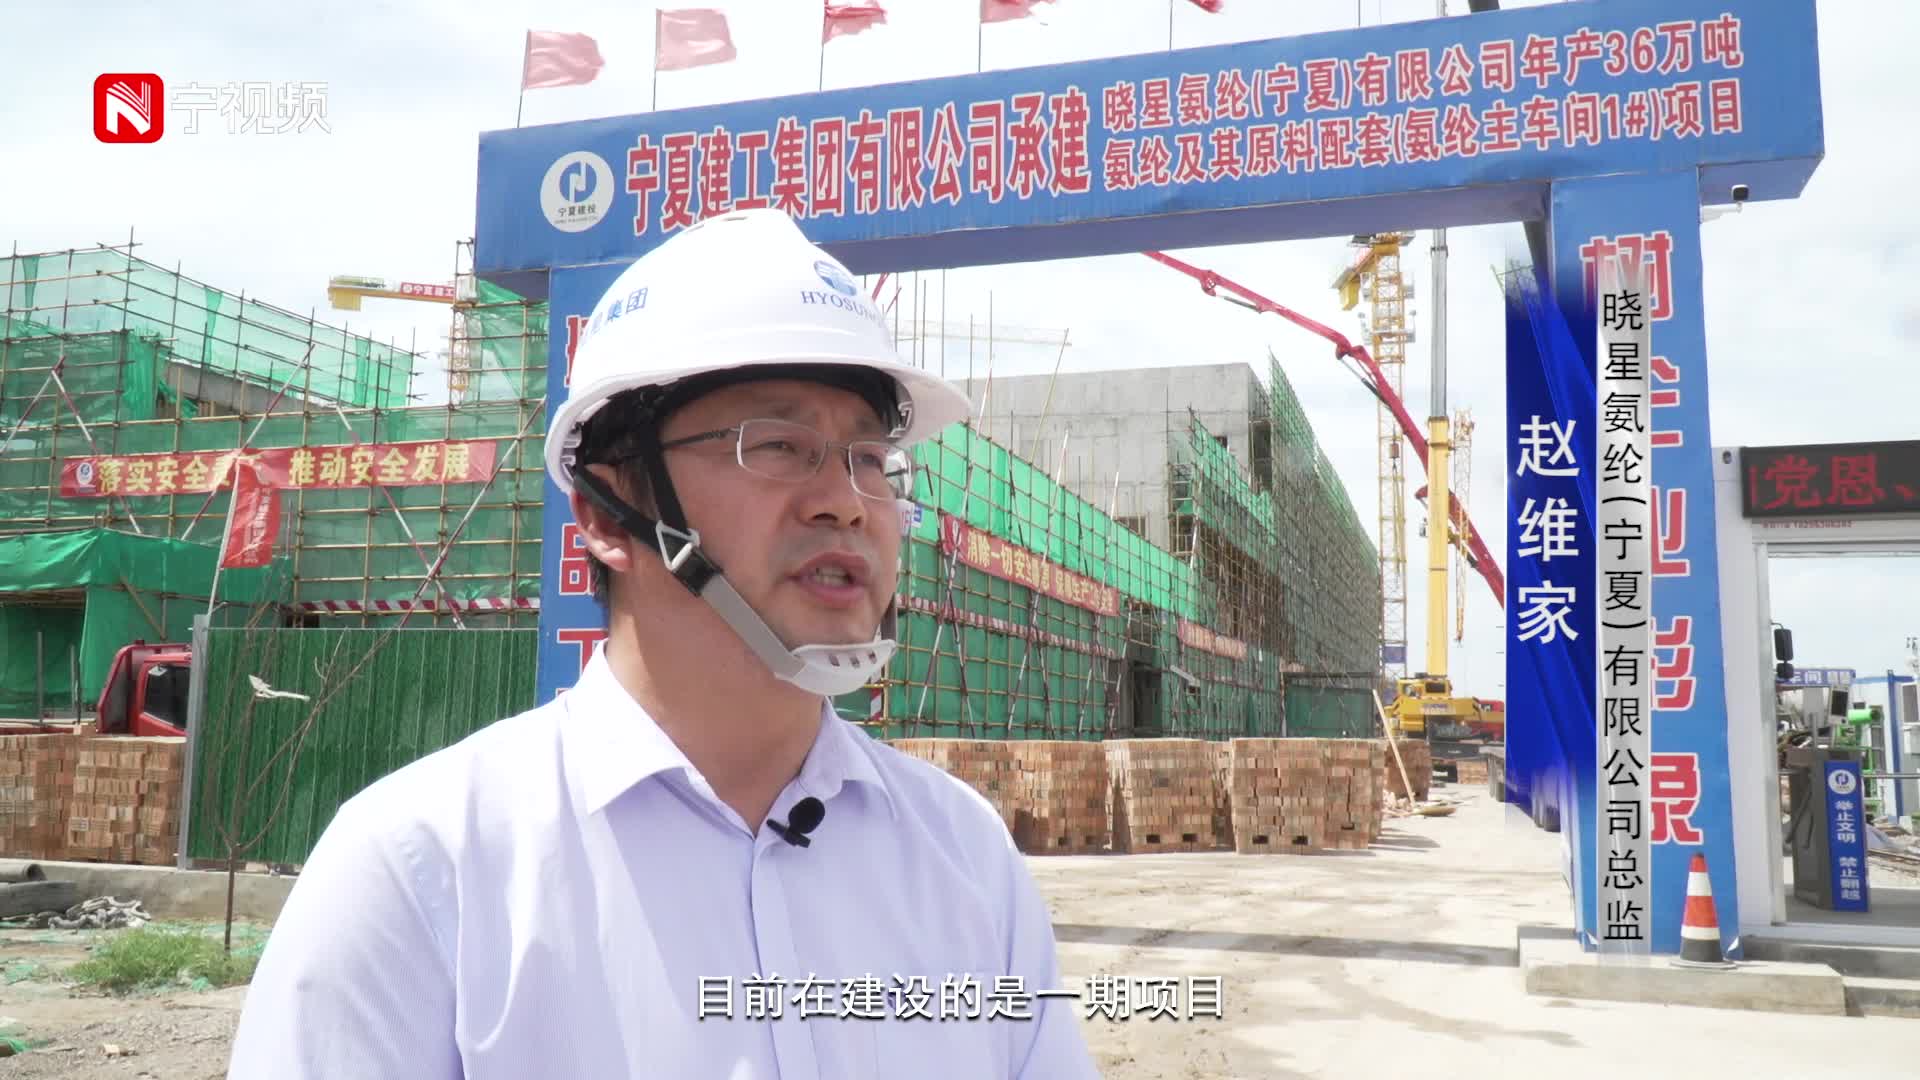 聚焦重大项目建设|宁夏最大外资投资项目晓星氨纶11月投产